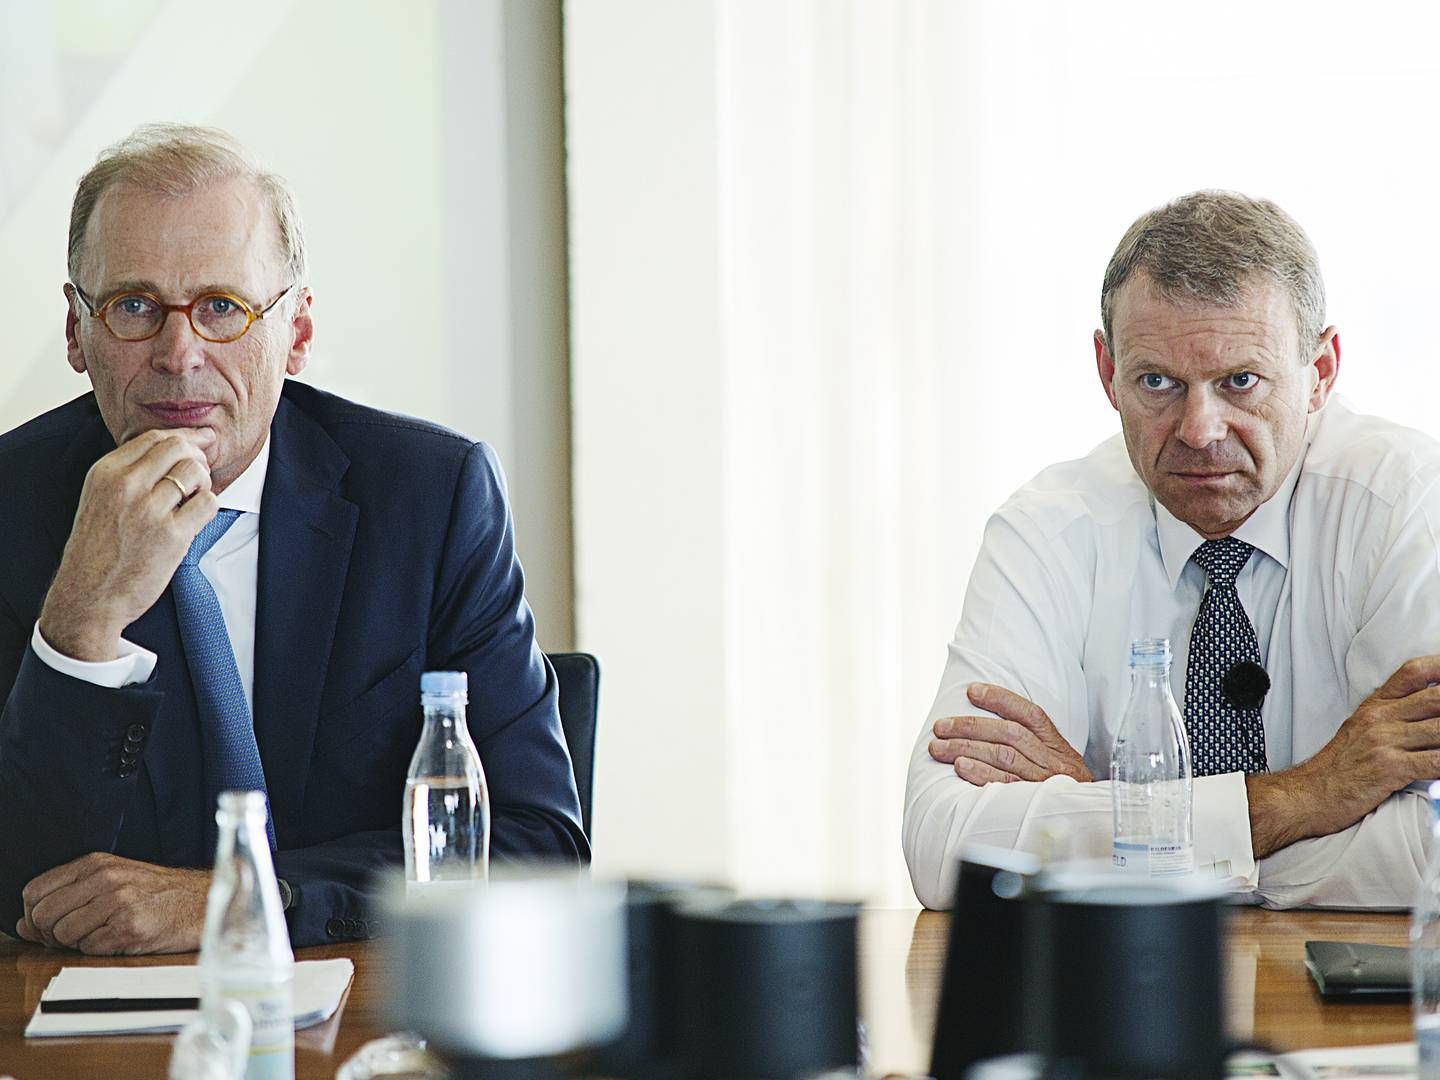 Pressebriefing hos Carlsberg ved CEO Cees 't Hart og CFO Jørn P. Jensen. | Foto: Carsten Bundgaard / ERH / Ritzau Scanpix